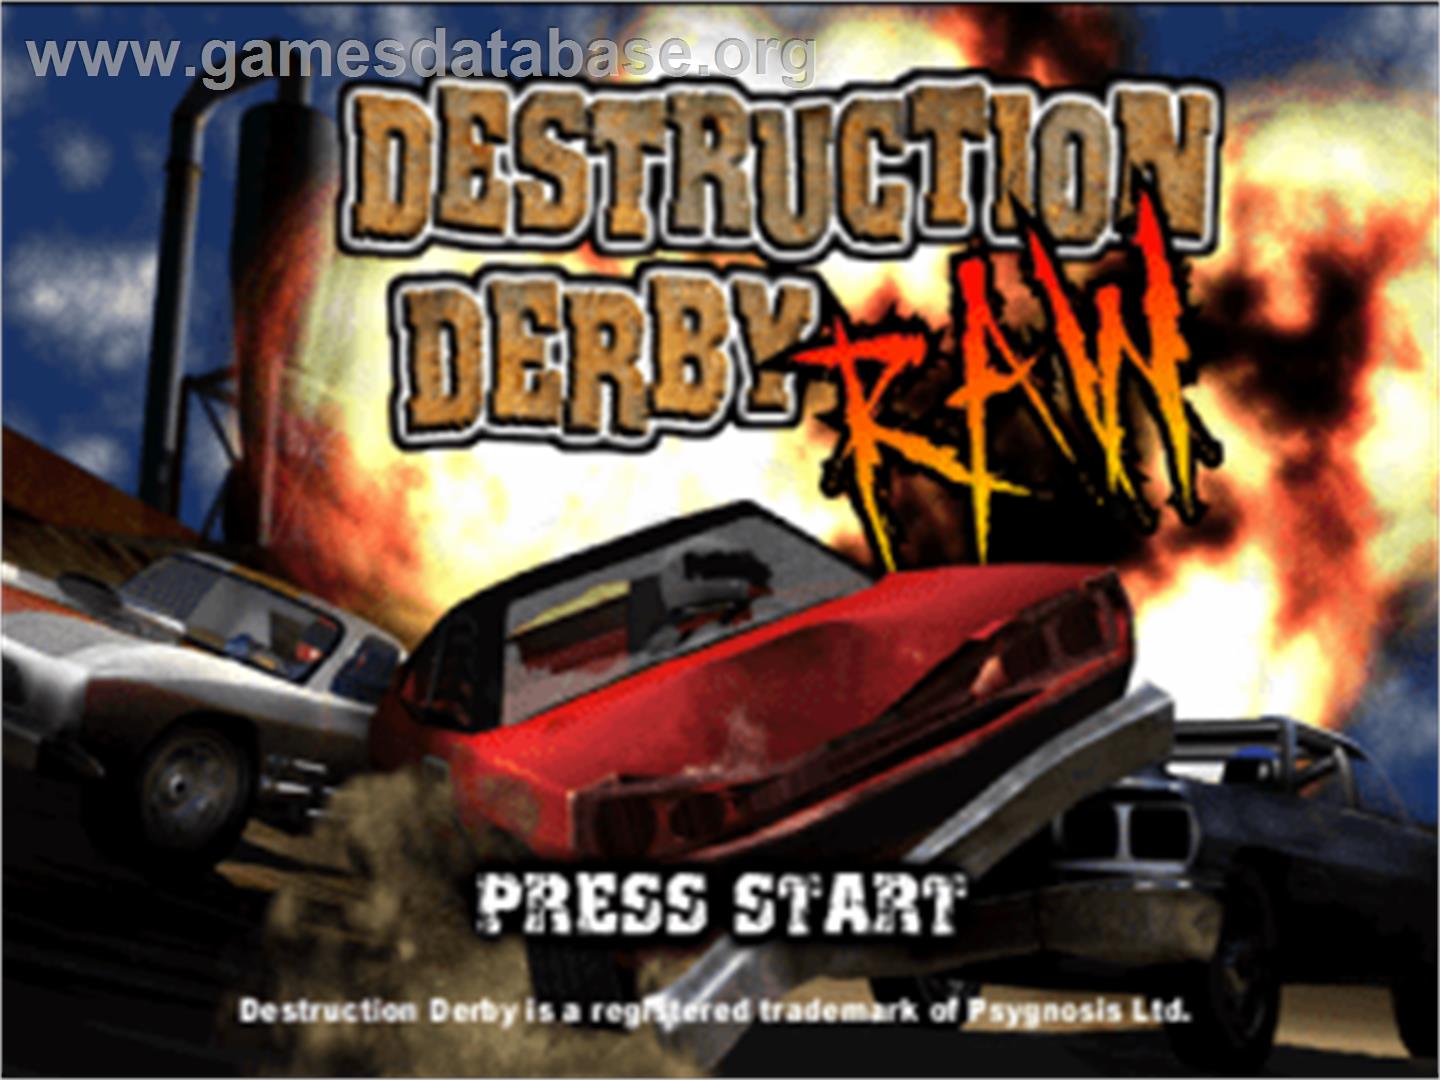 Destruction Derby Raw - Sony Playstation - Artwork - Title Screen